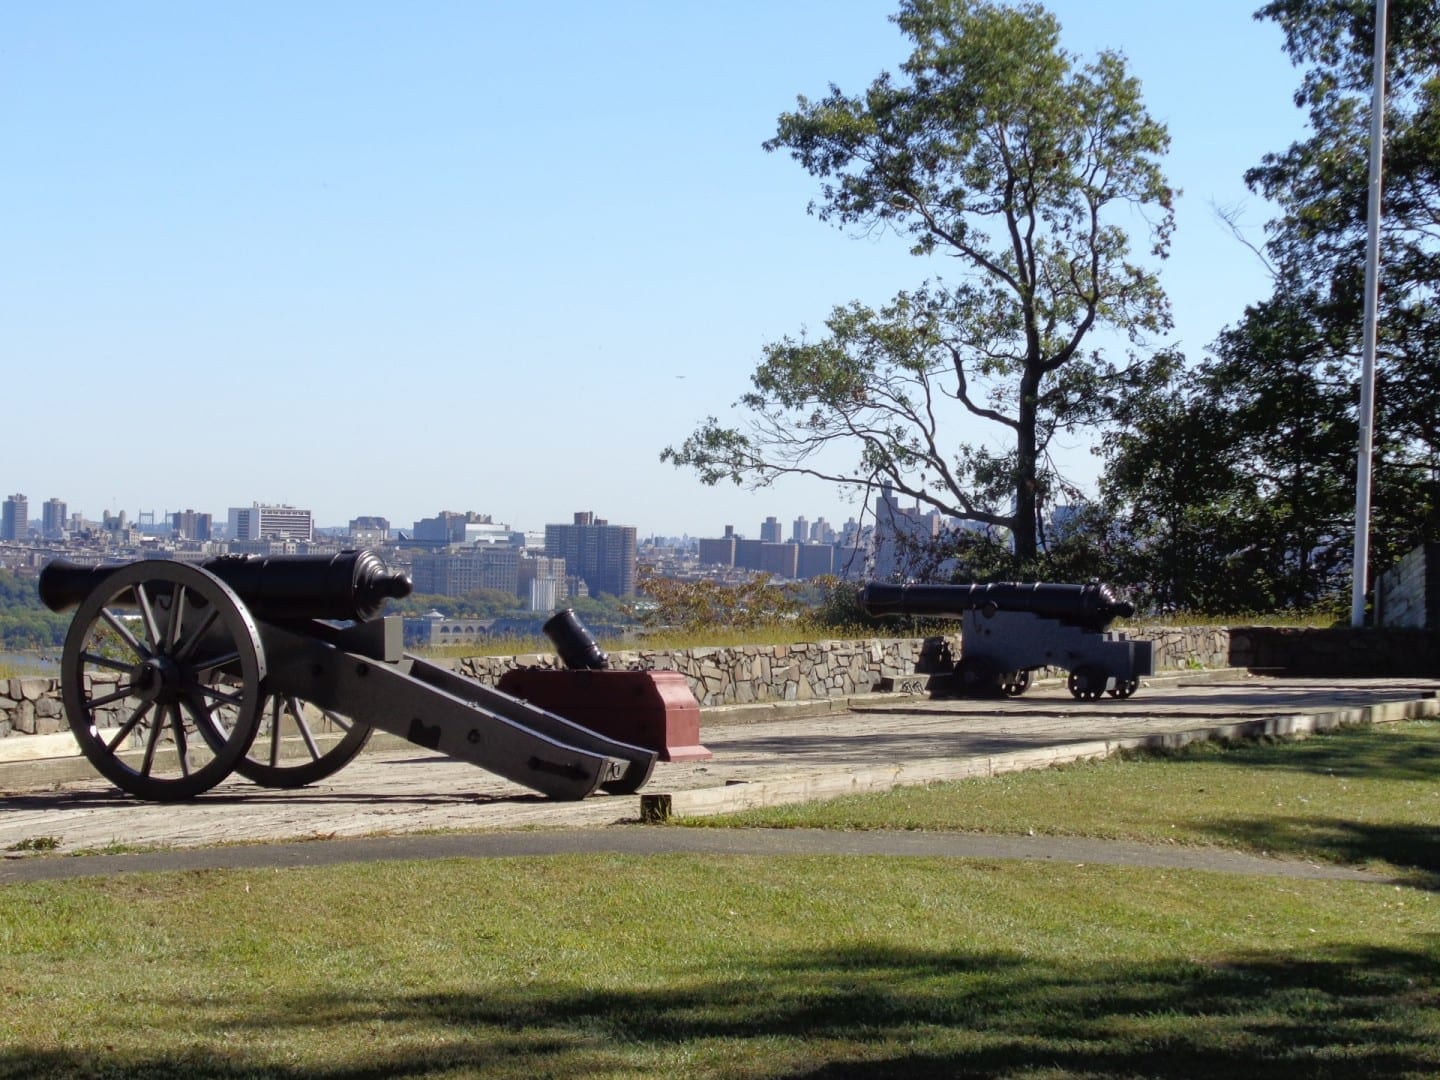 El Parque Histórico de Fort Lee, una reconstrucción de un campamento de la Guerra de la Revolución, con hermosas vistas y agradable vegetación. Fort Lee NJ Estados Unidos